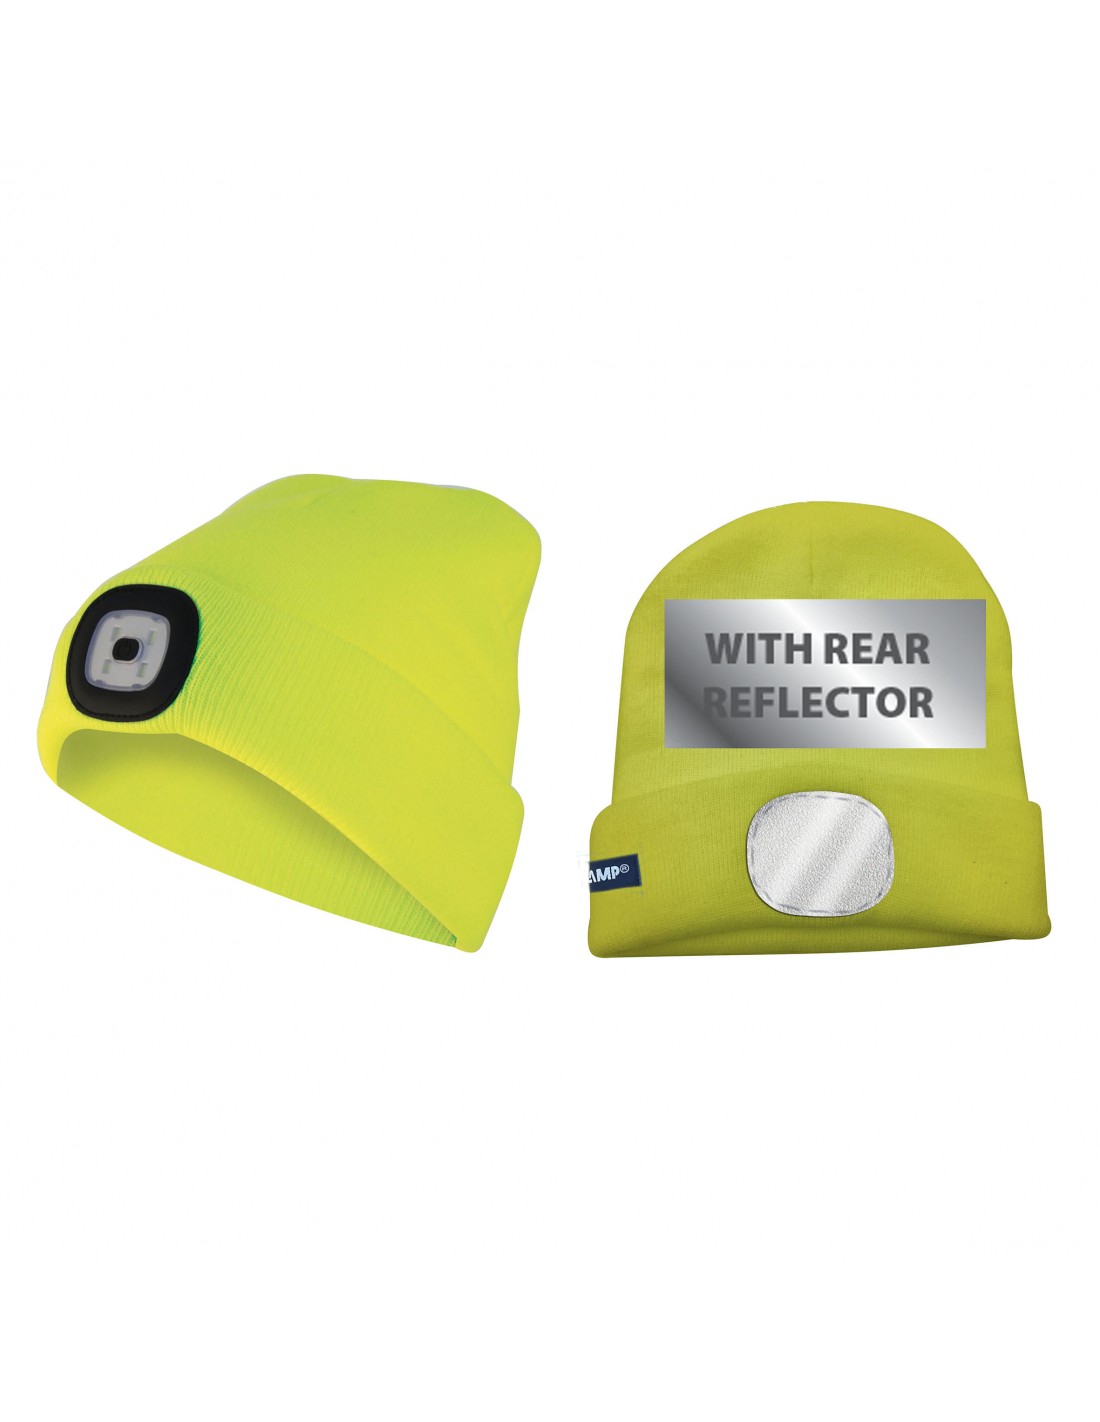 Mütze mit LED-Frontleuchte und Reflektor, Strickmütze mit LED-Licht ideal zum Joggen, Campen, Arbeiten, wiederaufladbar per USB und waschbar, gelb